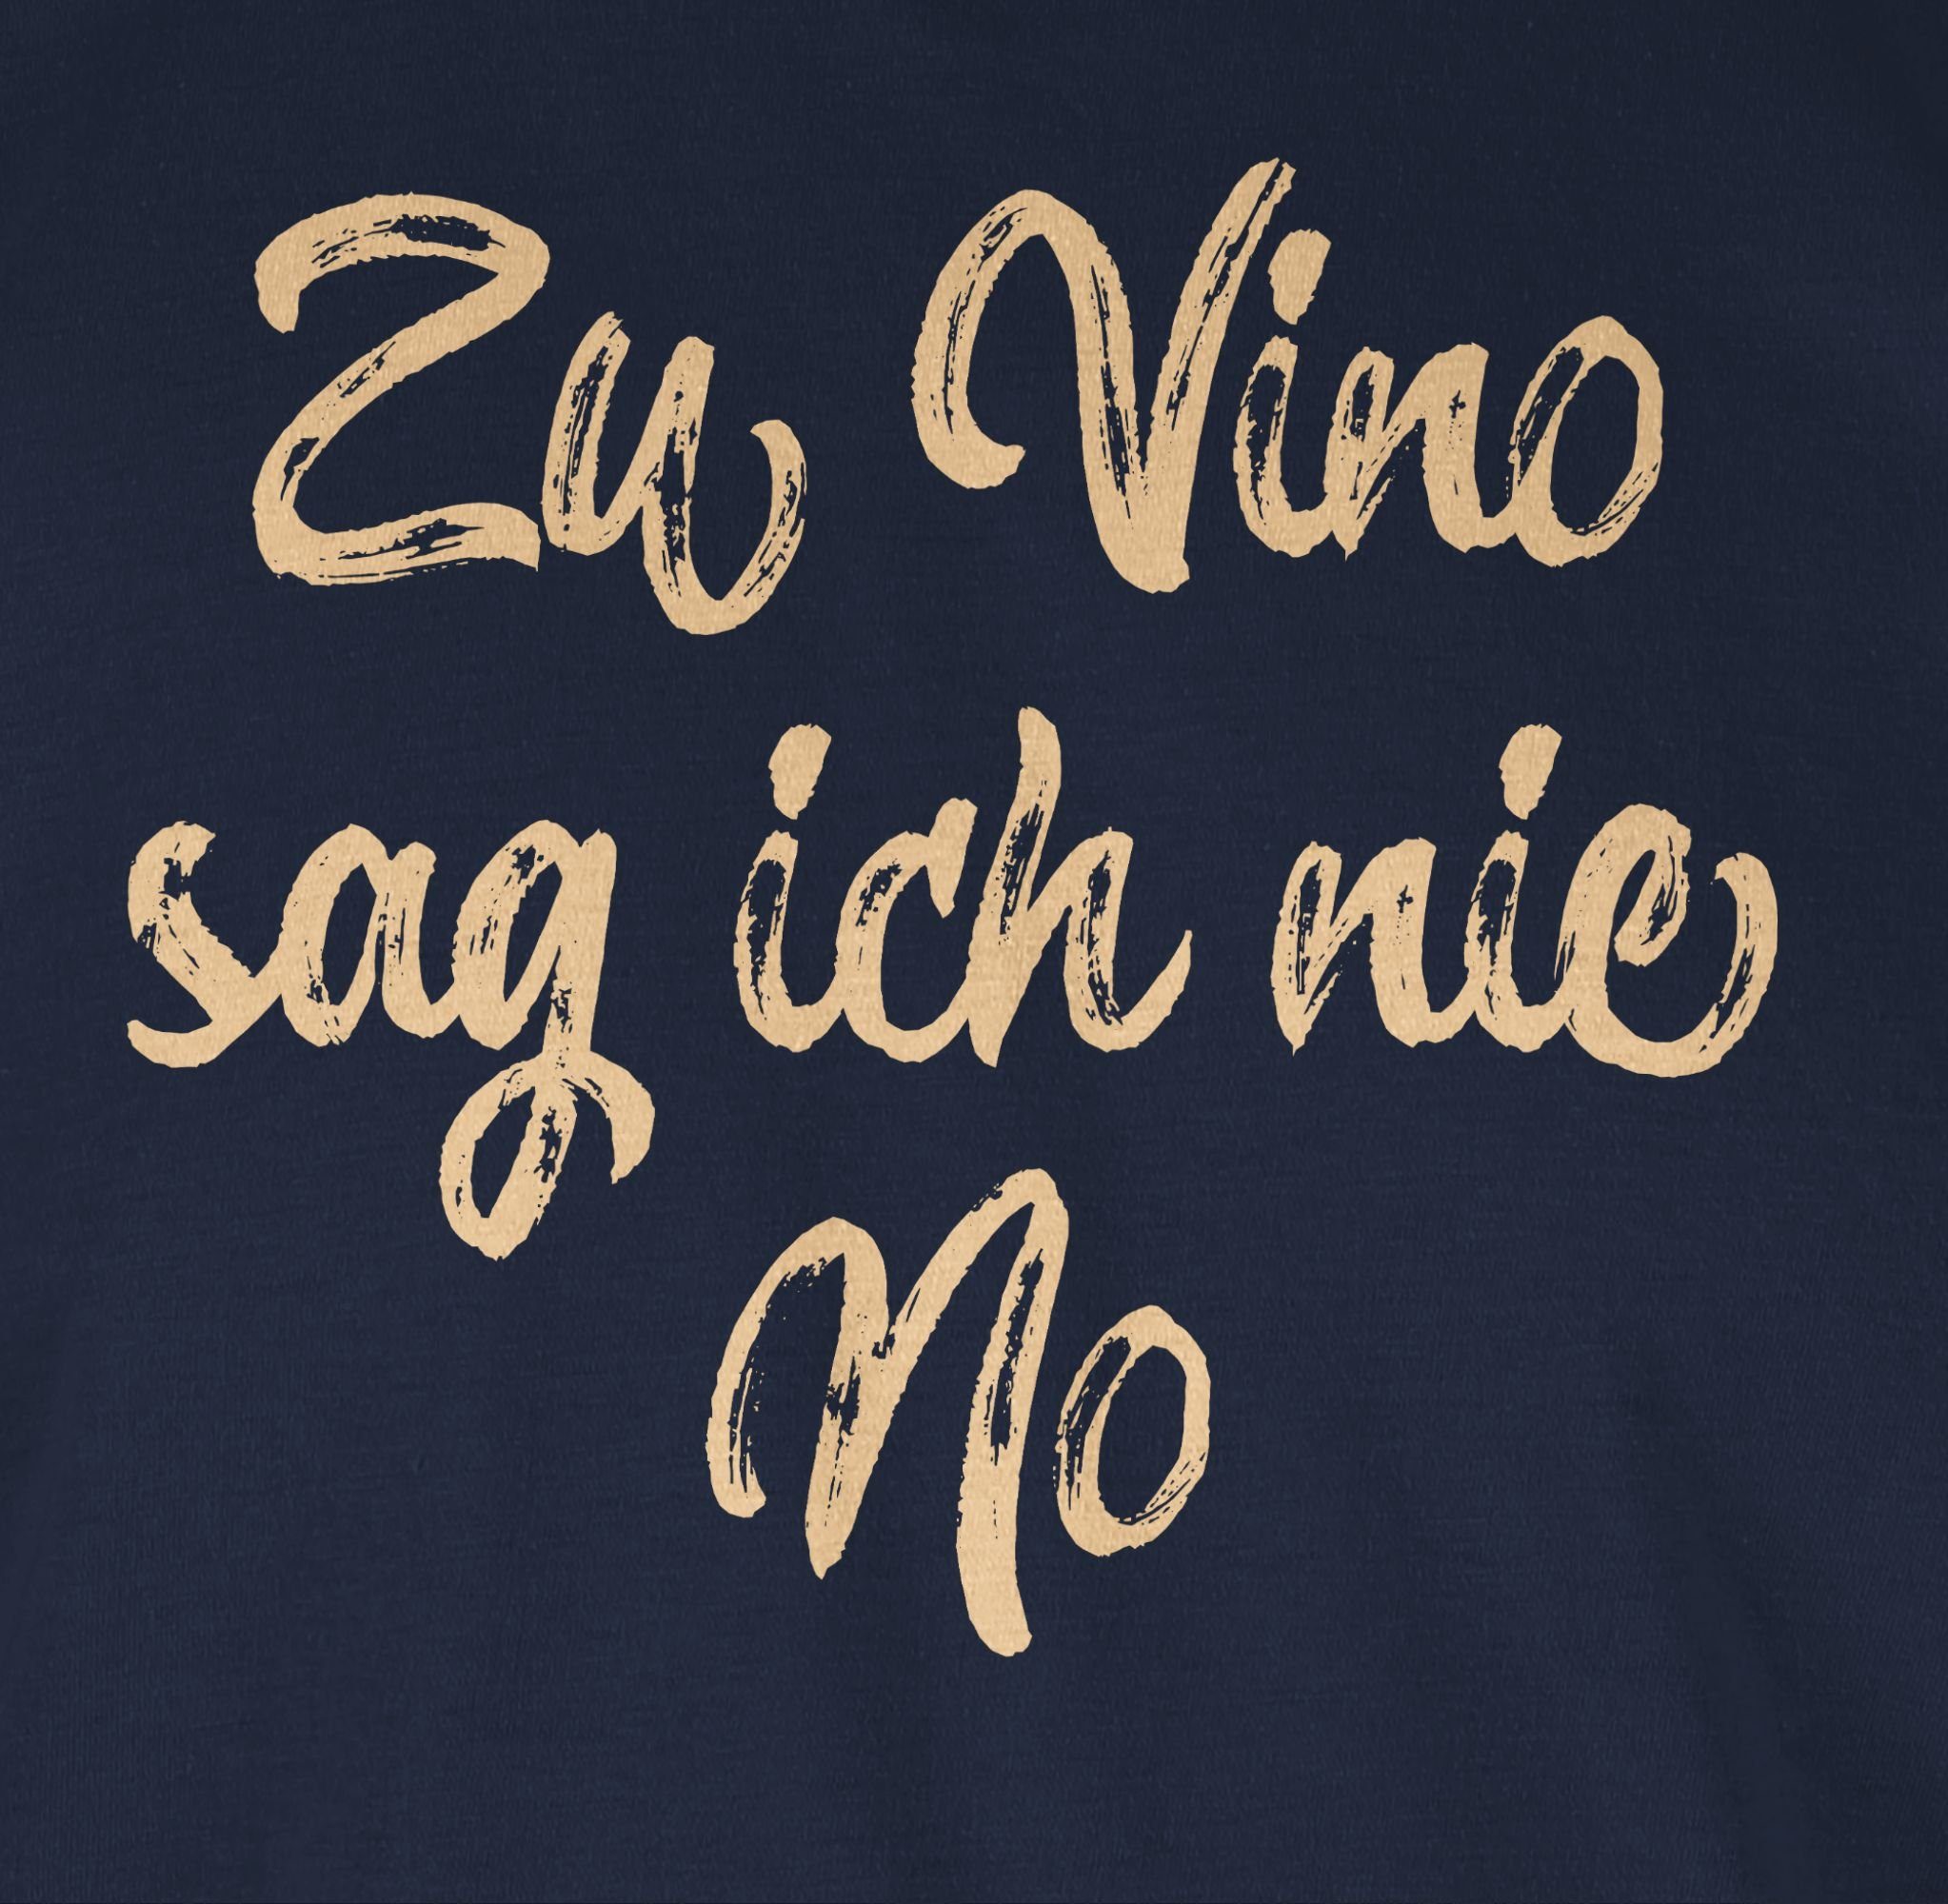 Damen Shirts Shirtracer T-Shirt Zu Vino sag ich nie No Vintage cremeweiß - Sprüche Statement mit Spruch - Damen Premium T-Shirt 